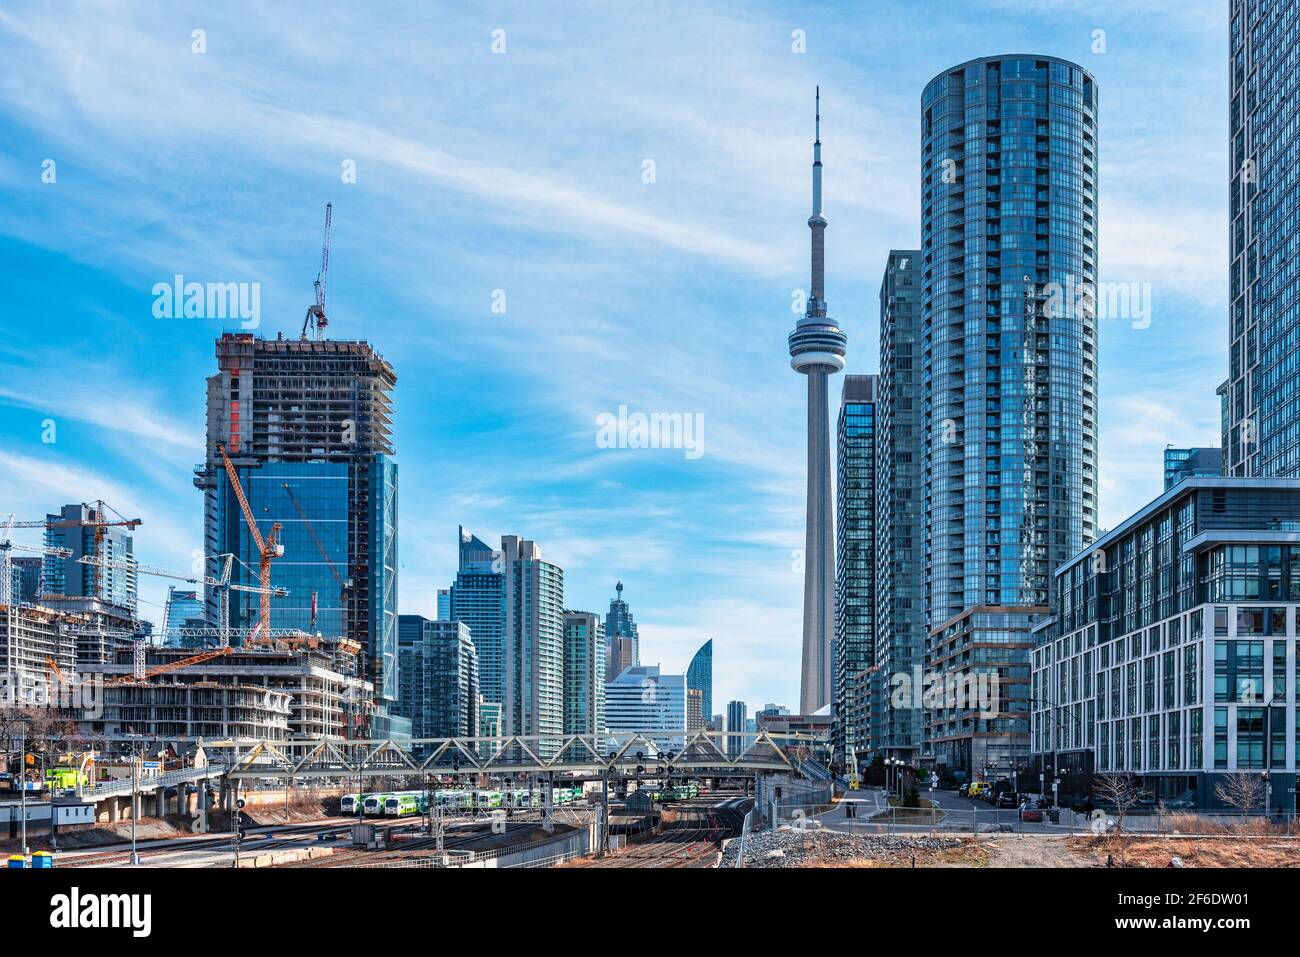 La CN Tower, simbolo canadese e punto di riferimento internazionale, è vista da un punto di vista insolito Foto Stock